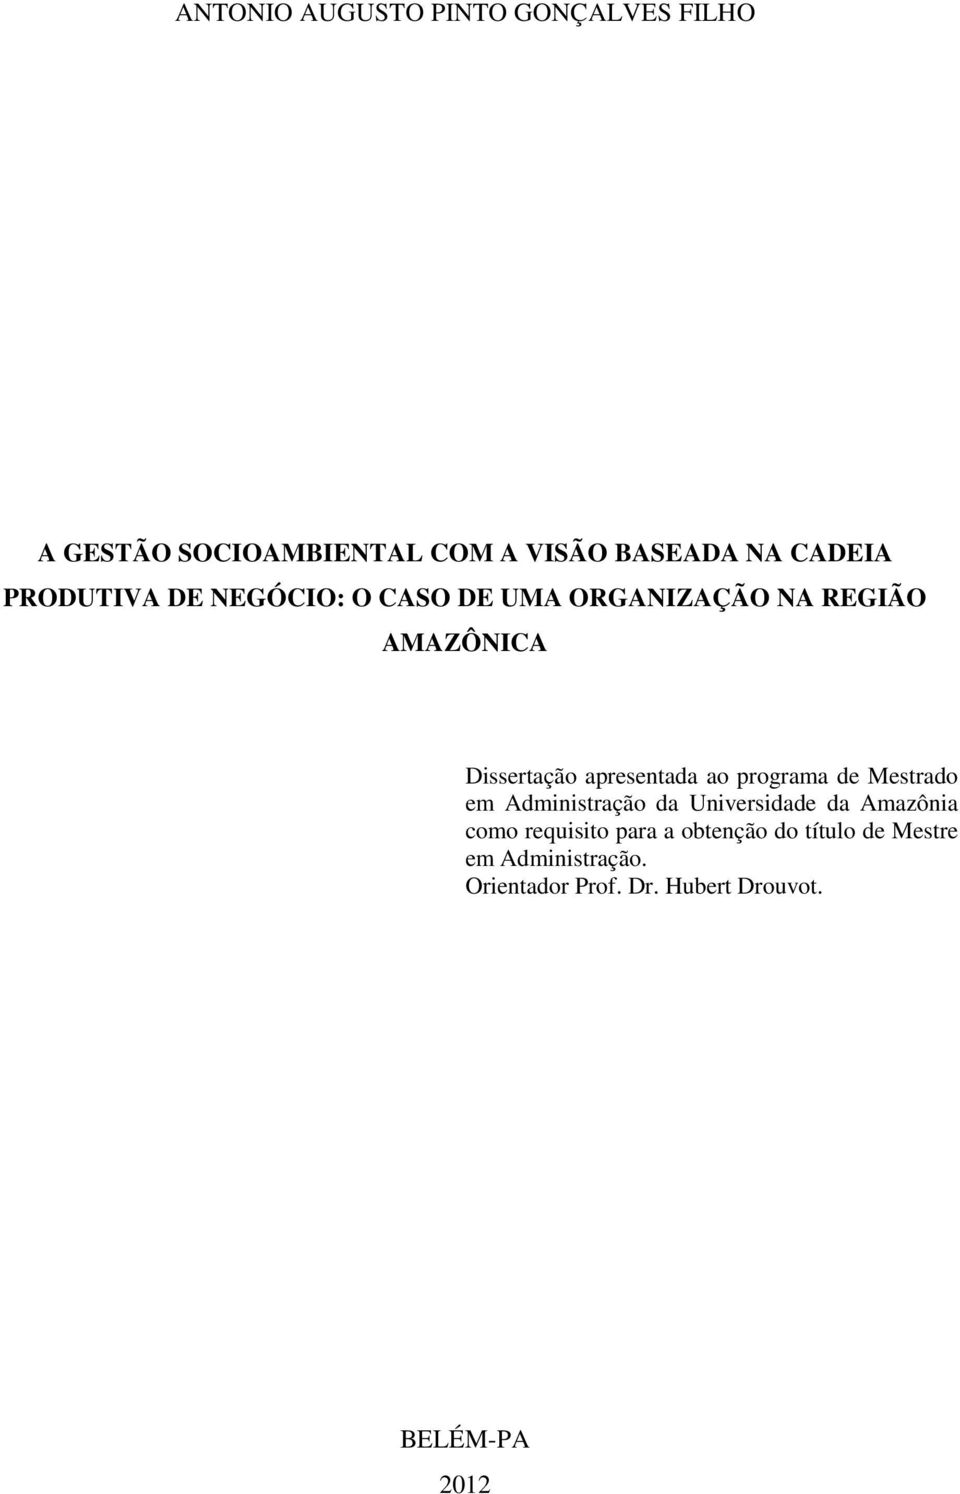 ao programa de Mestrado em Administração da Universidade da Amazônia como requisito para a